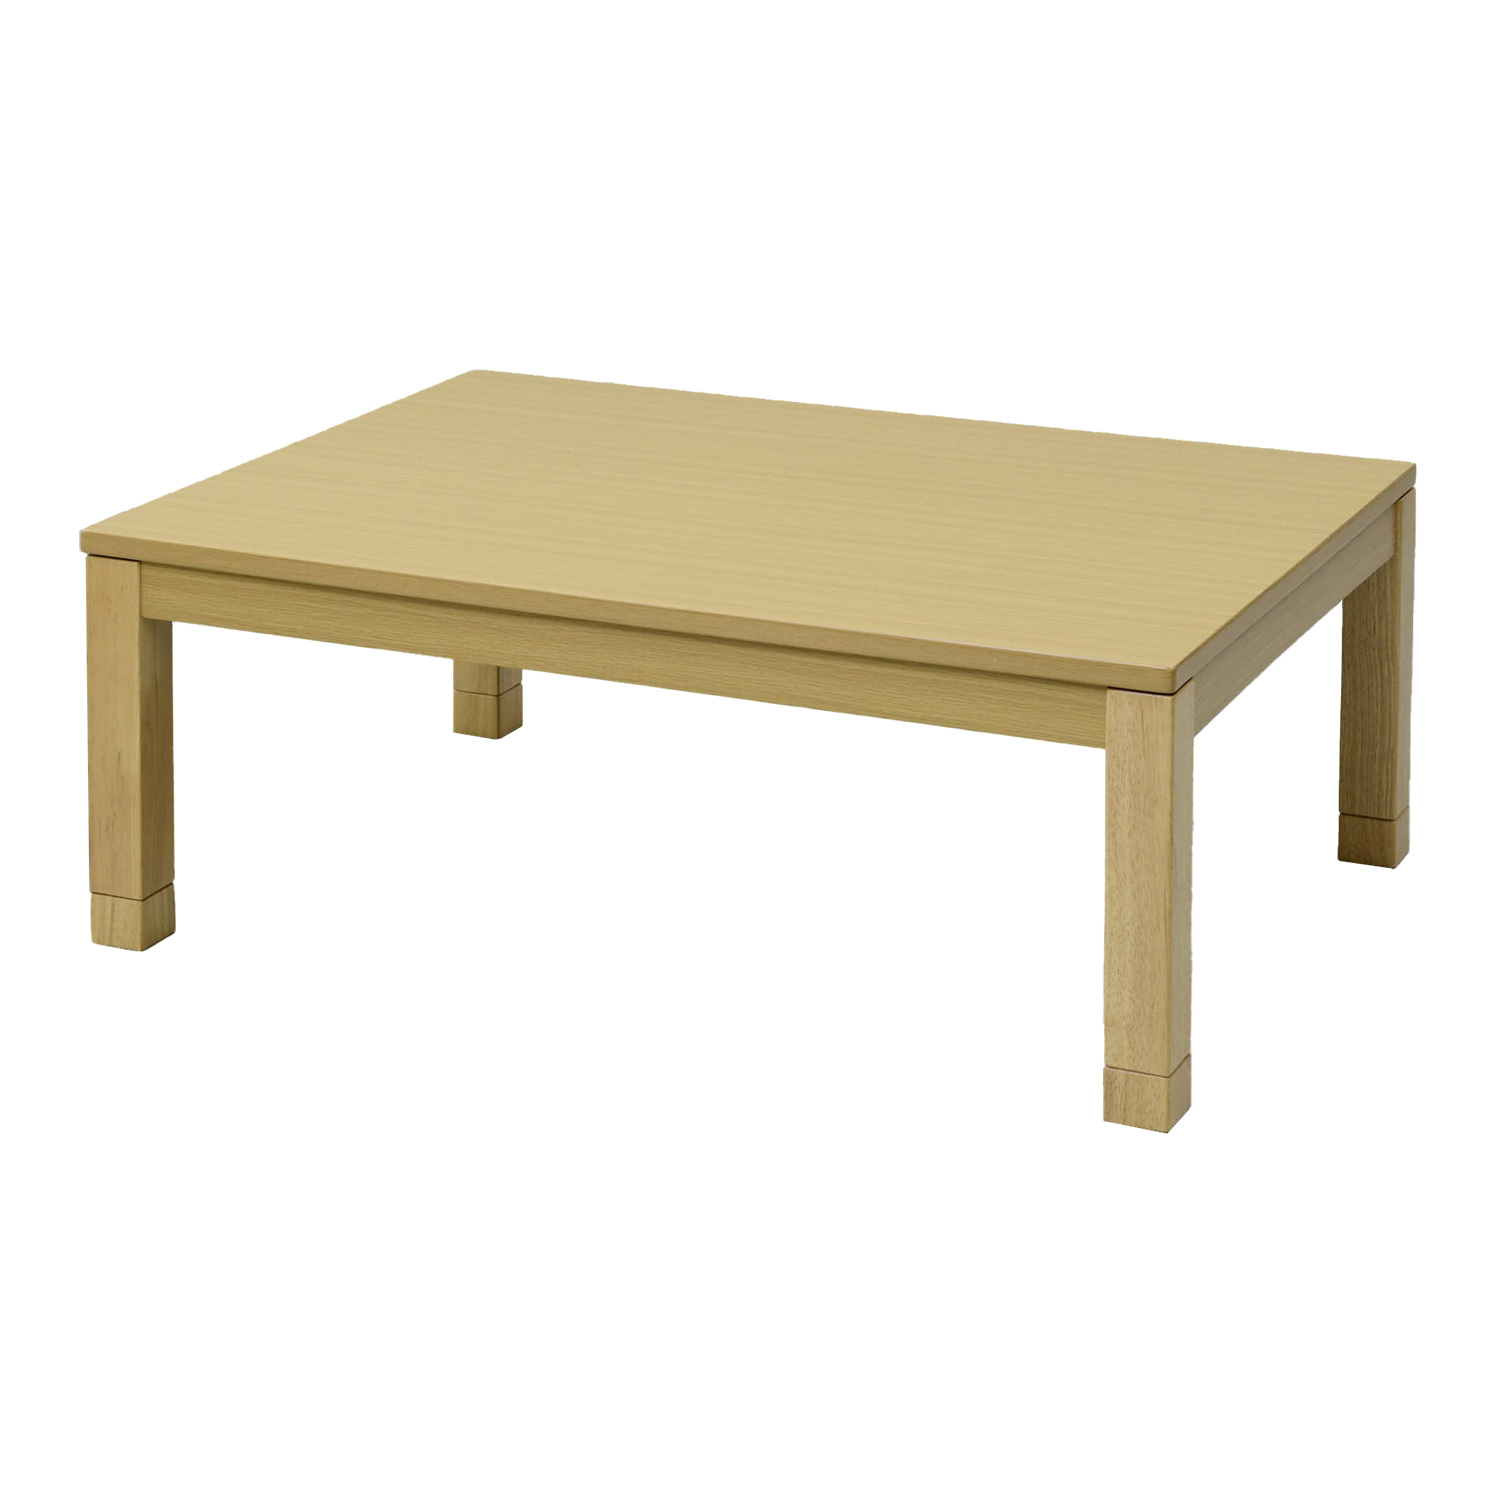 こたつ こたつテーブル 105x75cm 長方形 継脚 高さ調節可能